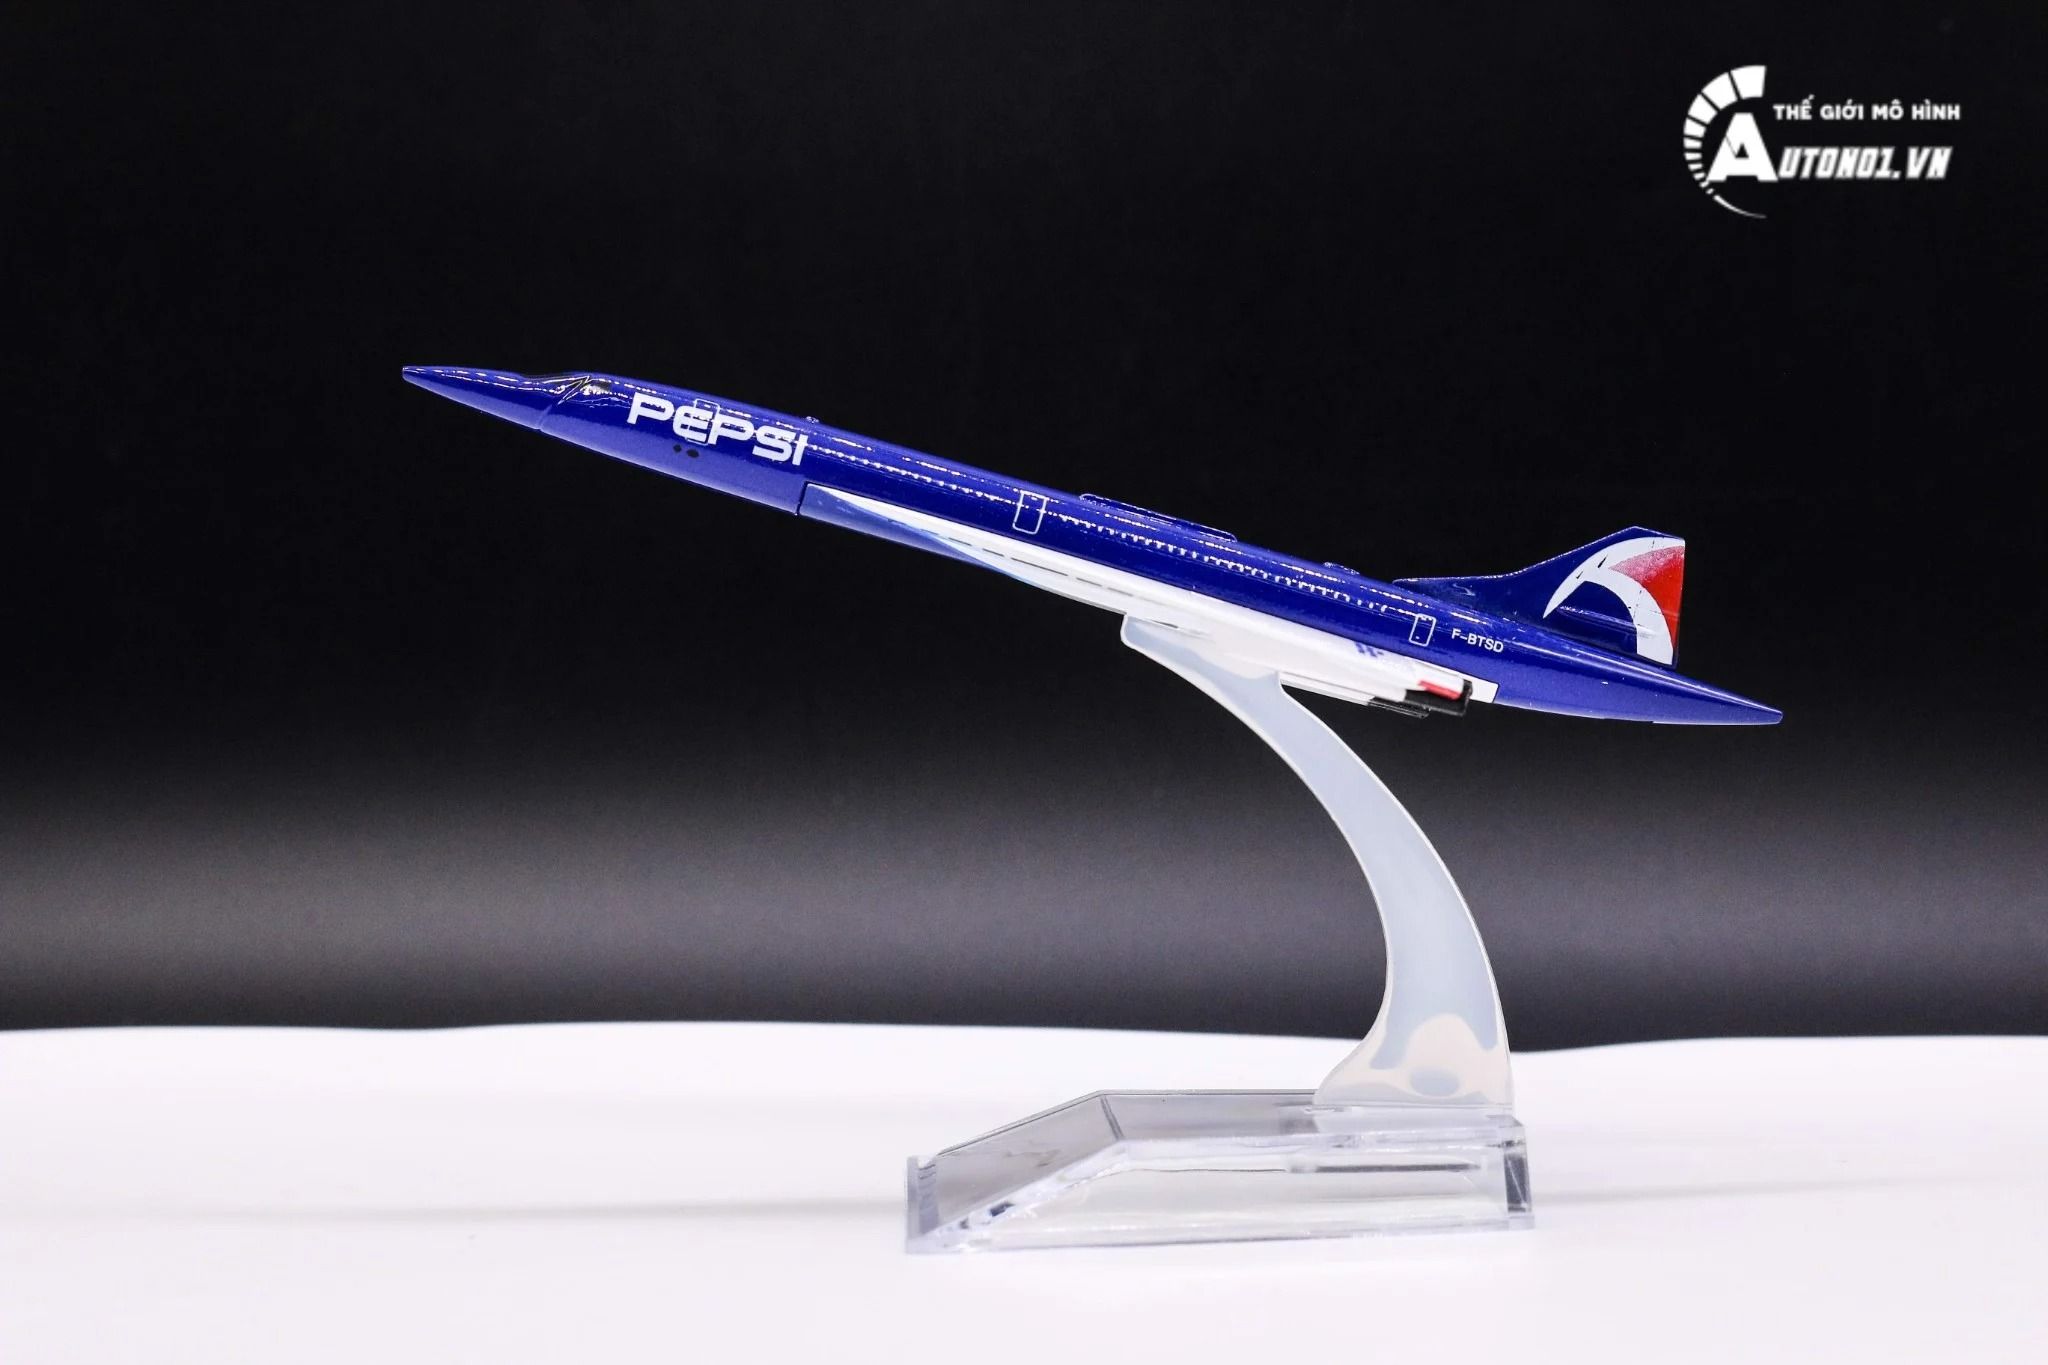  Mô hình máy bay phản lực Concorde Pepsi France – British airway 16cm MB16163 